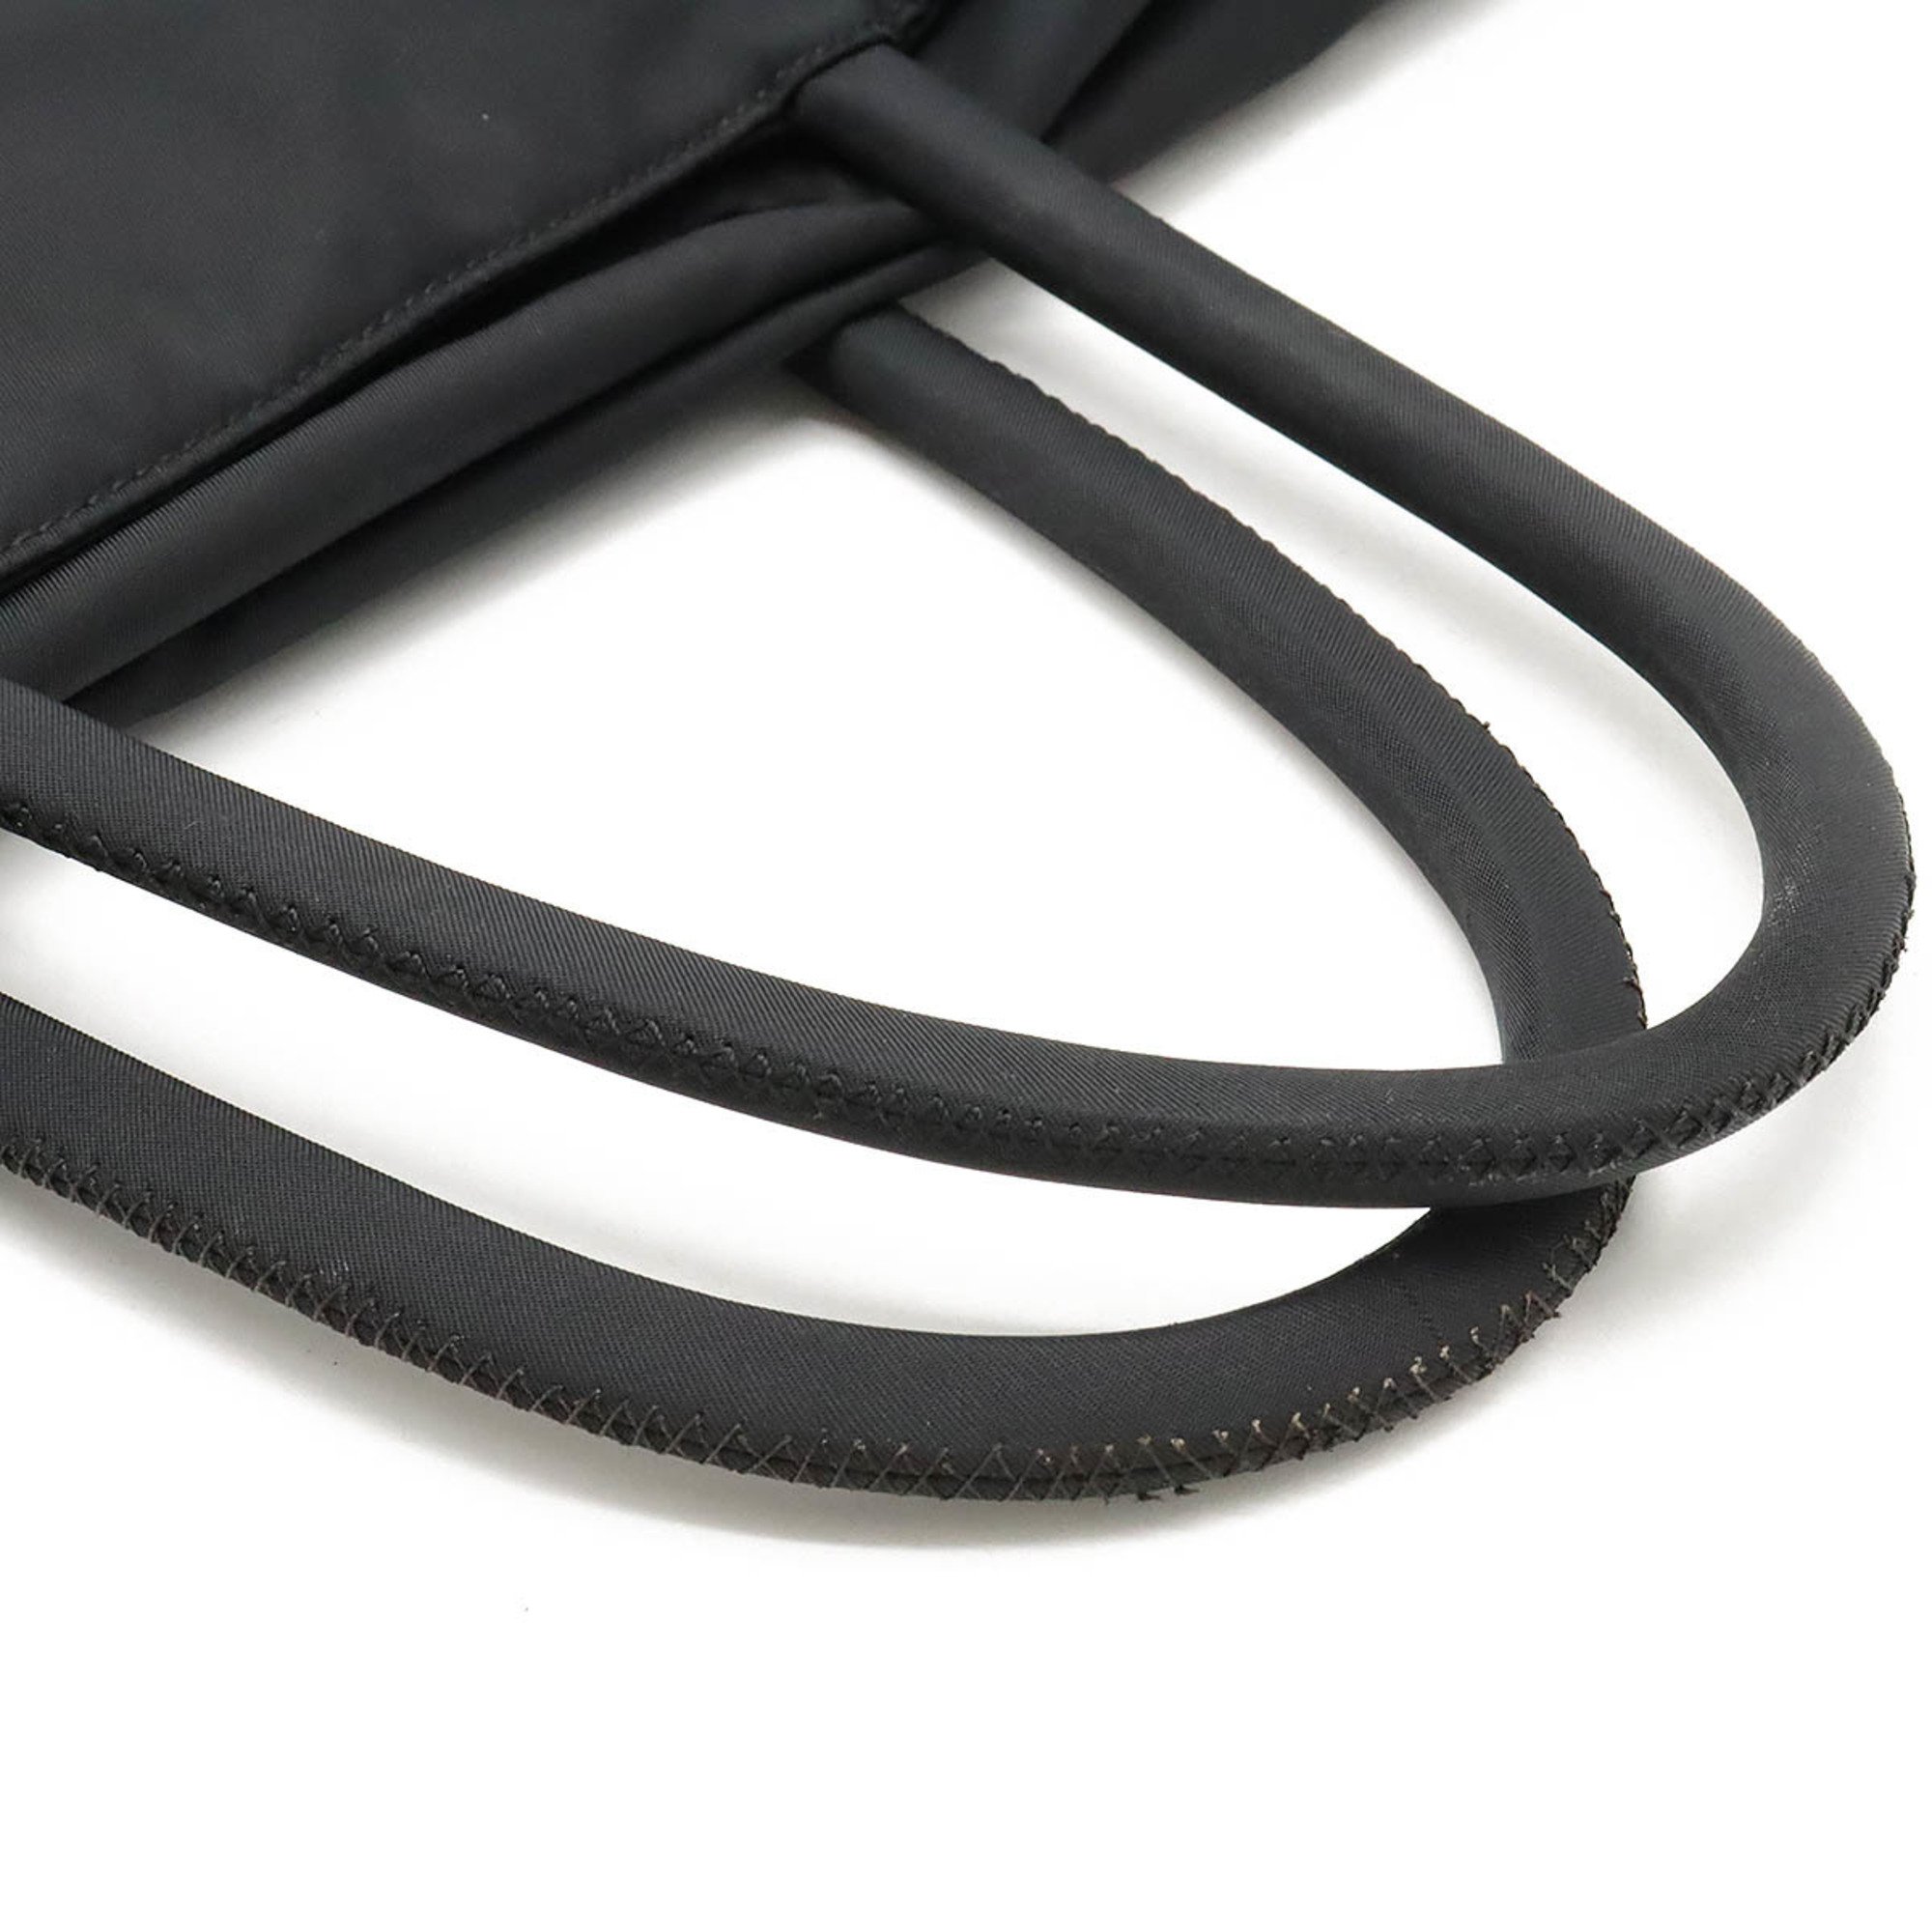 PRADA Prada Tote Bag Handbag Nylon NERO Black